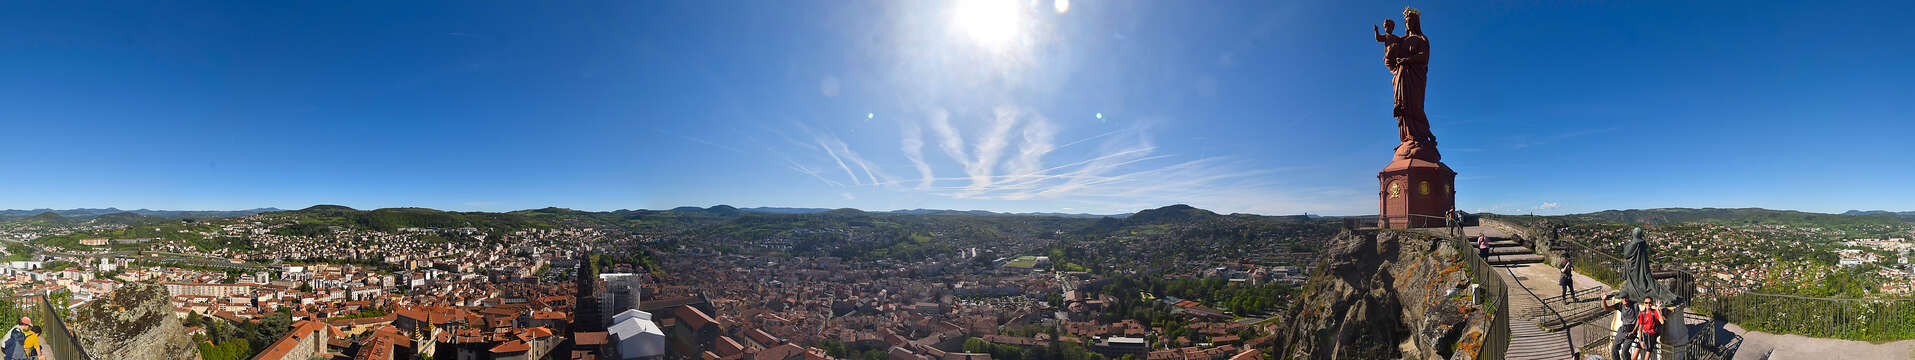 Webcam of the Notre-Dame de France statue 360° in Le Puy-en-Velay